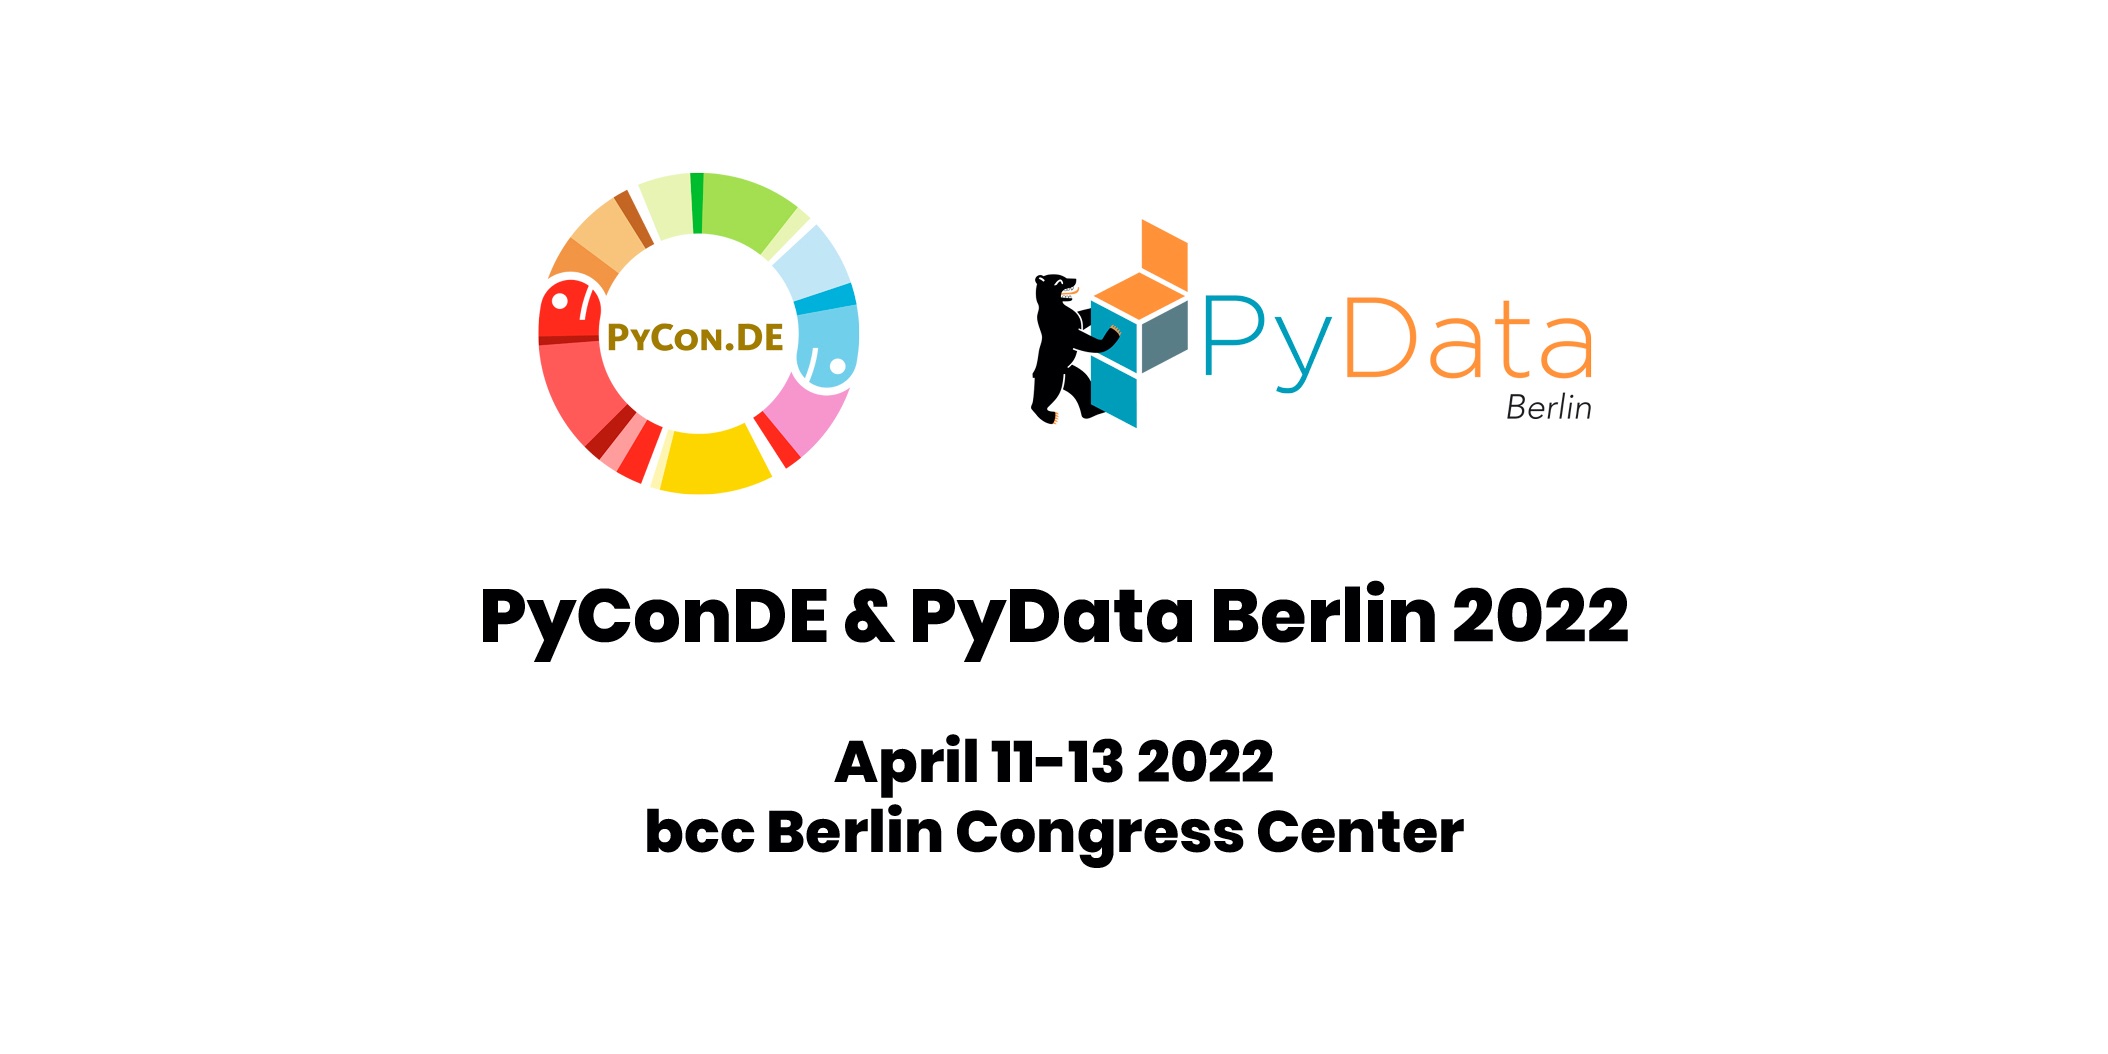 PyCon.DE & PyData Berlin, 2022 PyConDE & PyData Berlin 2022